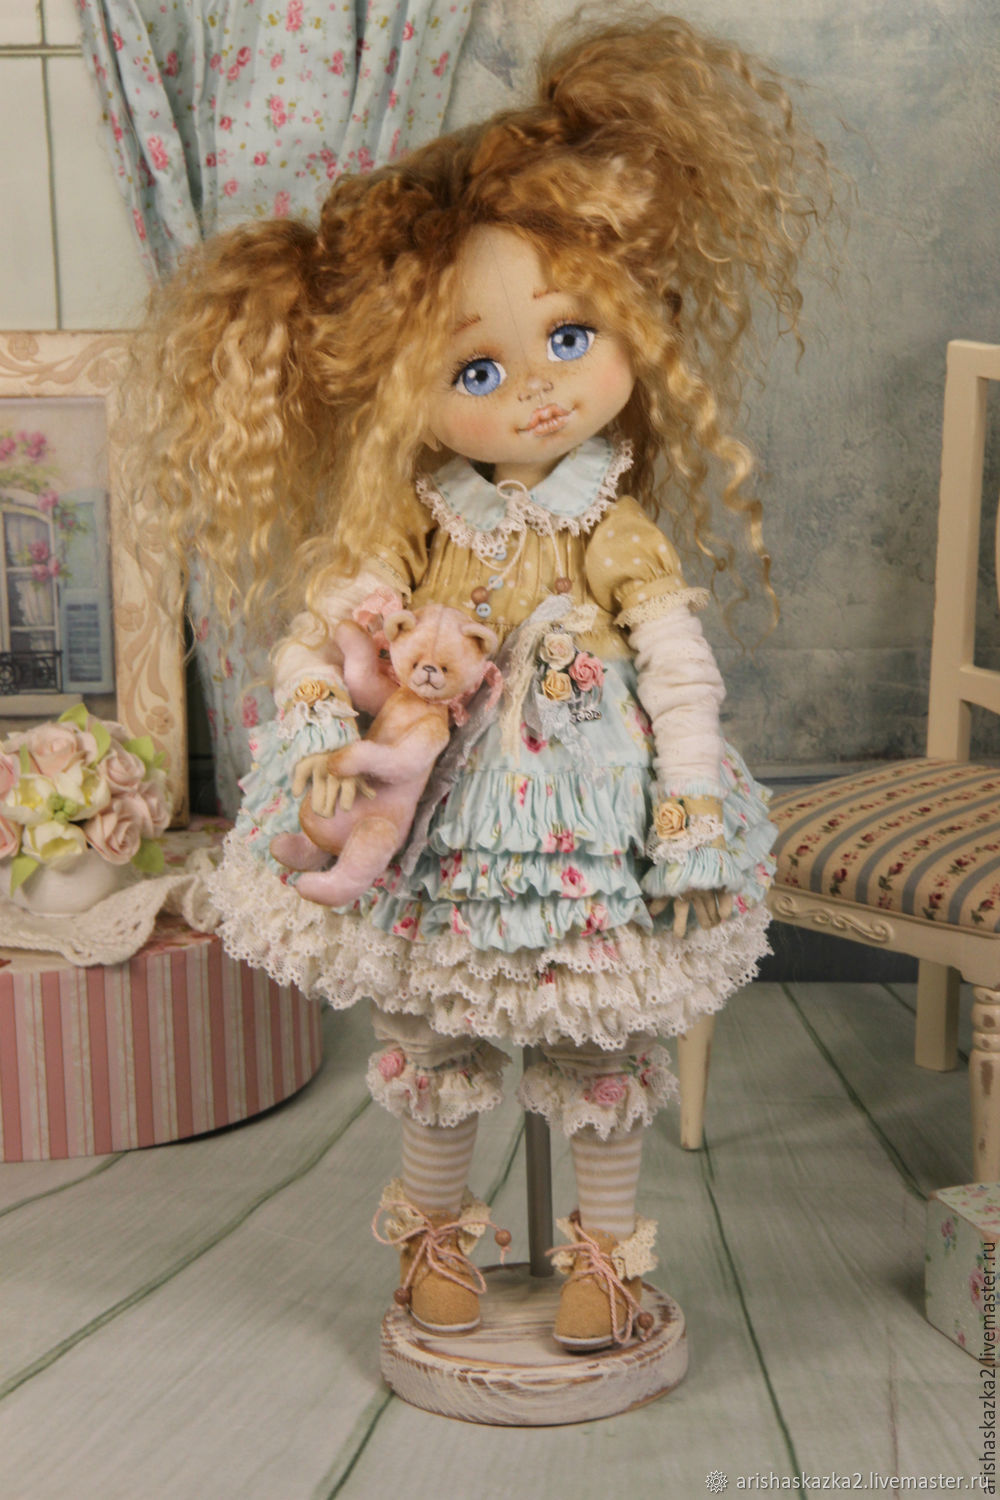 Набор для шитья кукол Ариша мягкая игрушка шитье